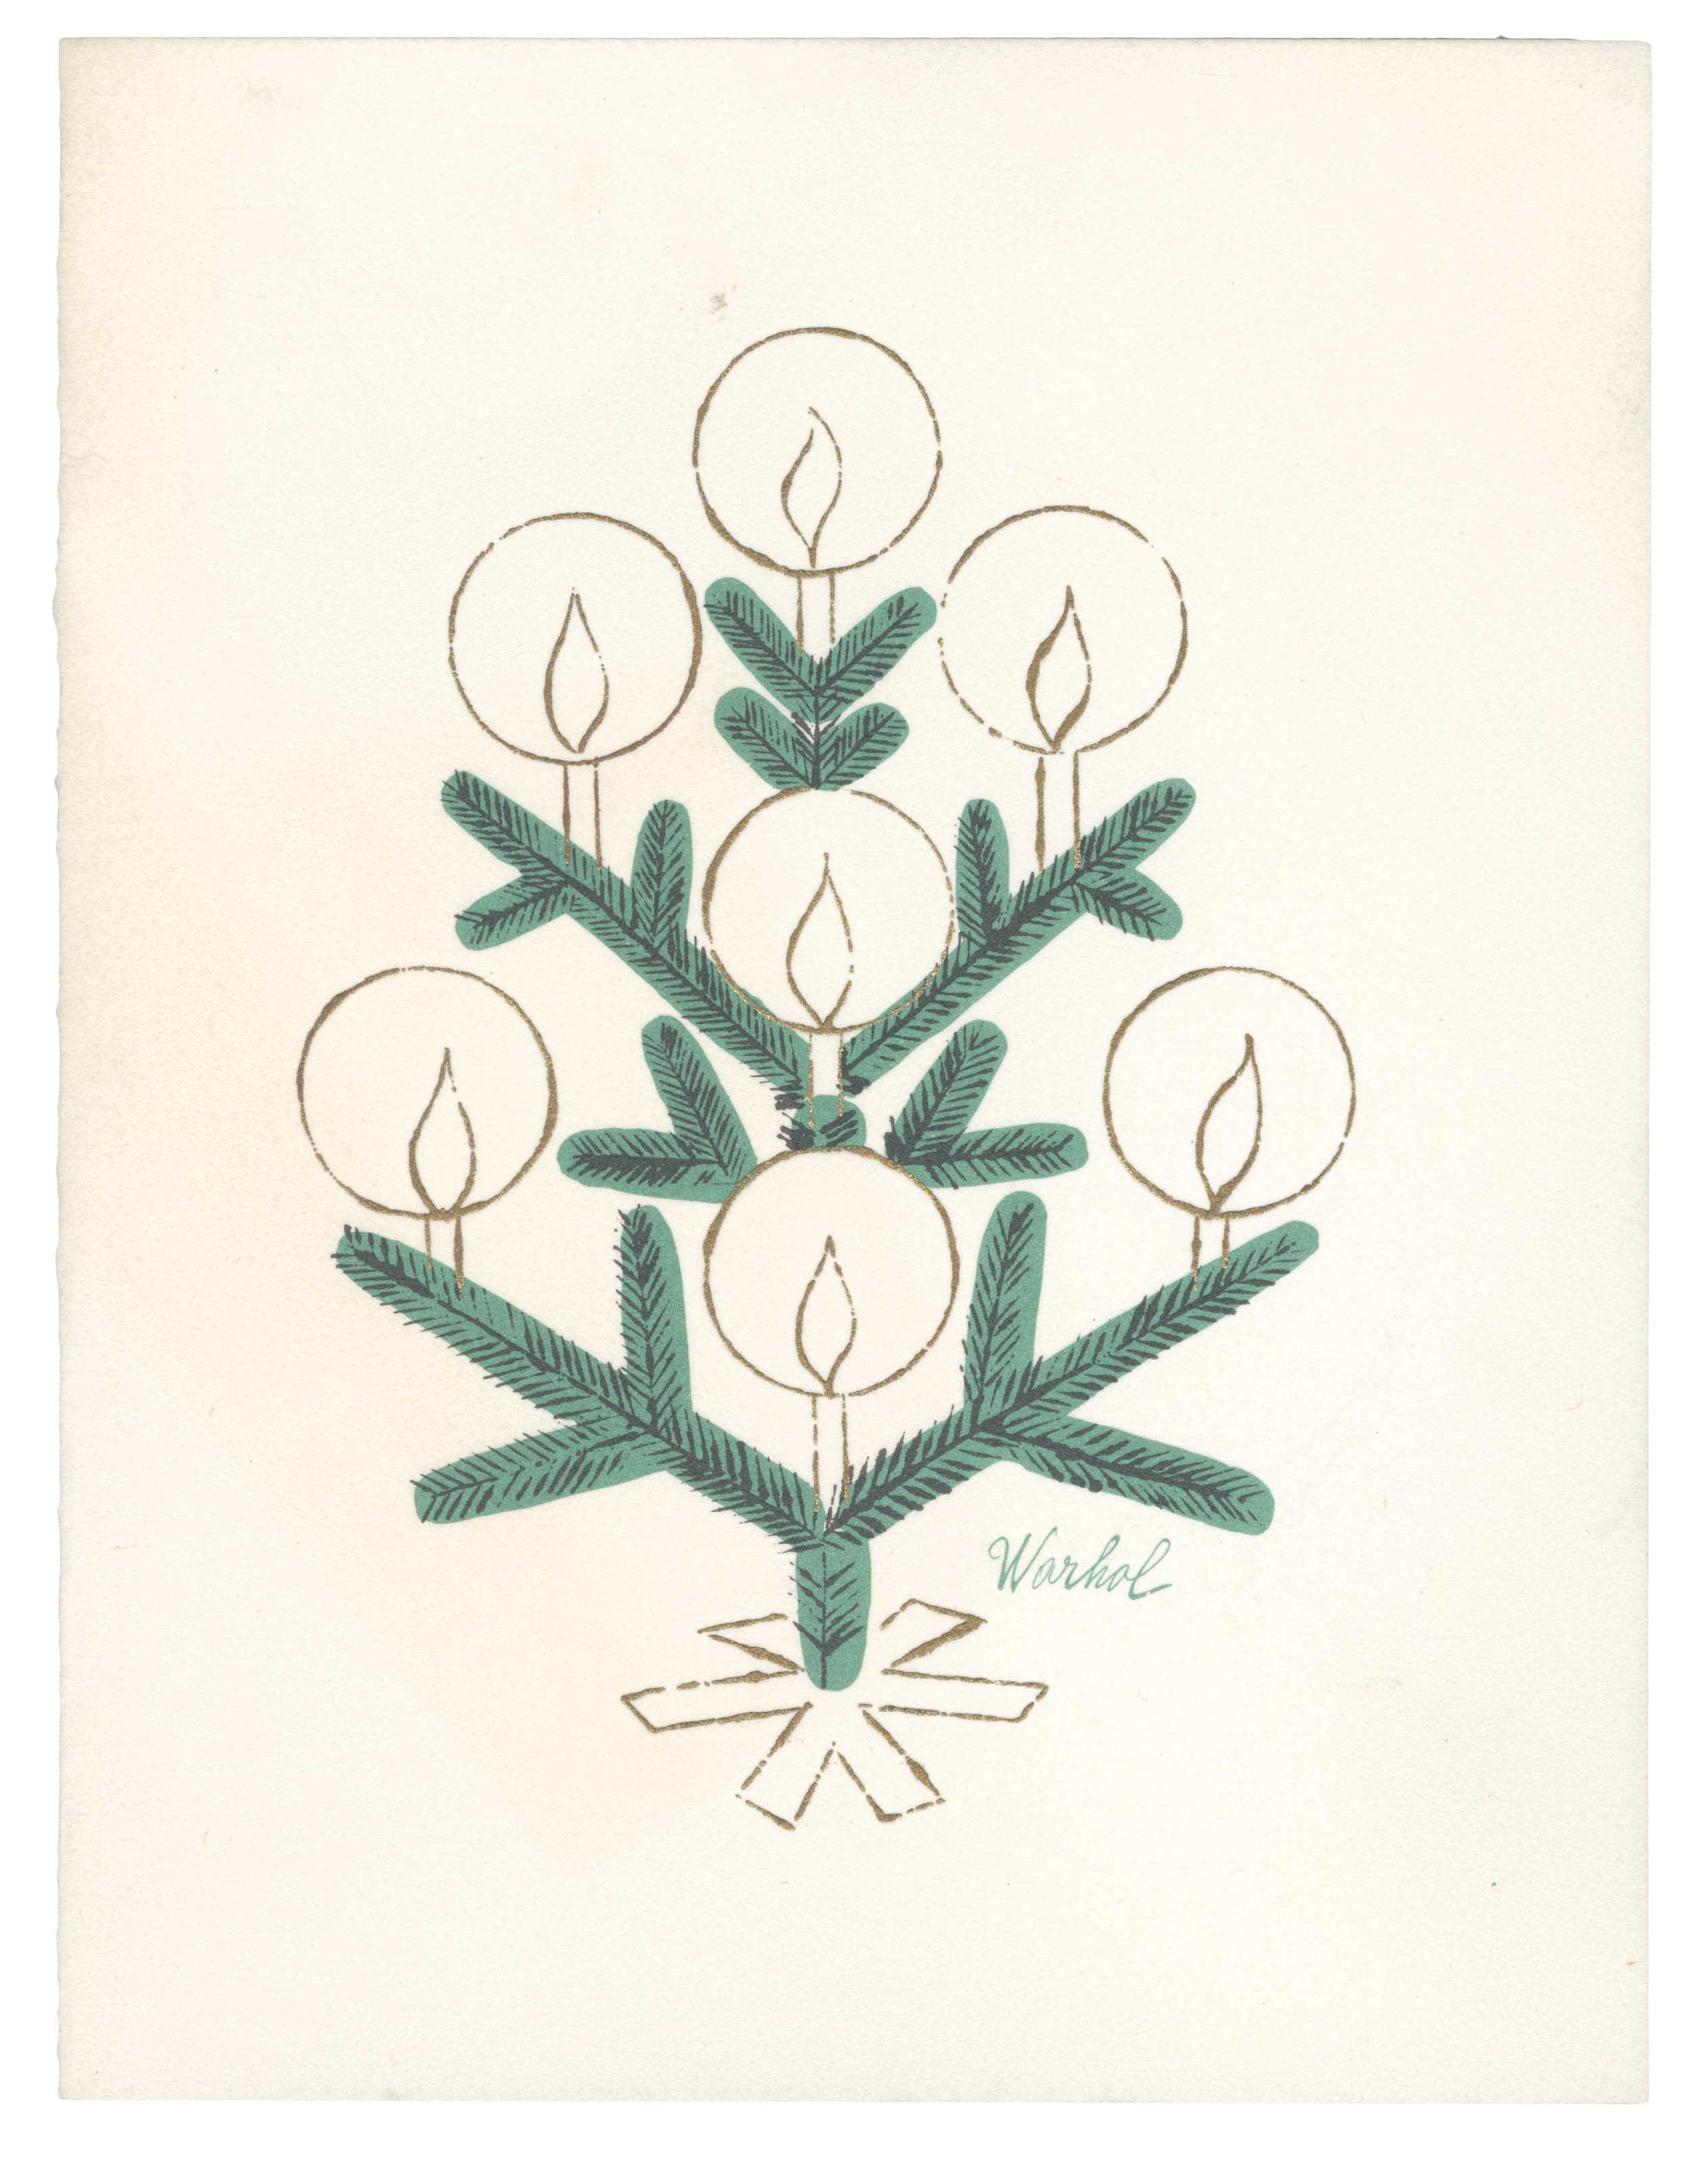 Andy Warhol, Tiffany & Co. Christmas Card (1956 circa; stampa a colori su cartoncino piegato, 14 x 10,8 cm; Collezione privata)
